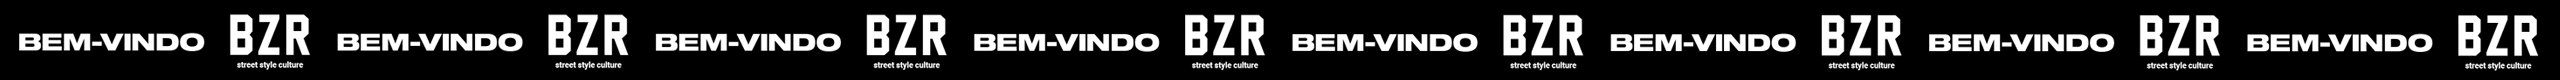 Vdeo com o logo do BZR Street style culture em branco e com a palavra bem-vindo a branco em fundo preto